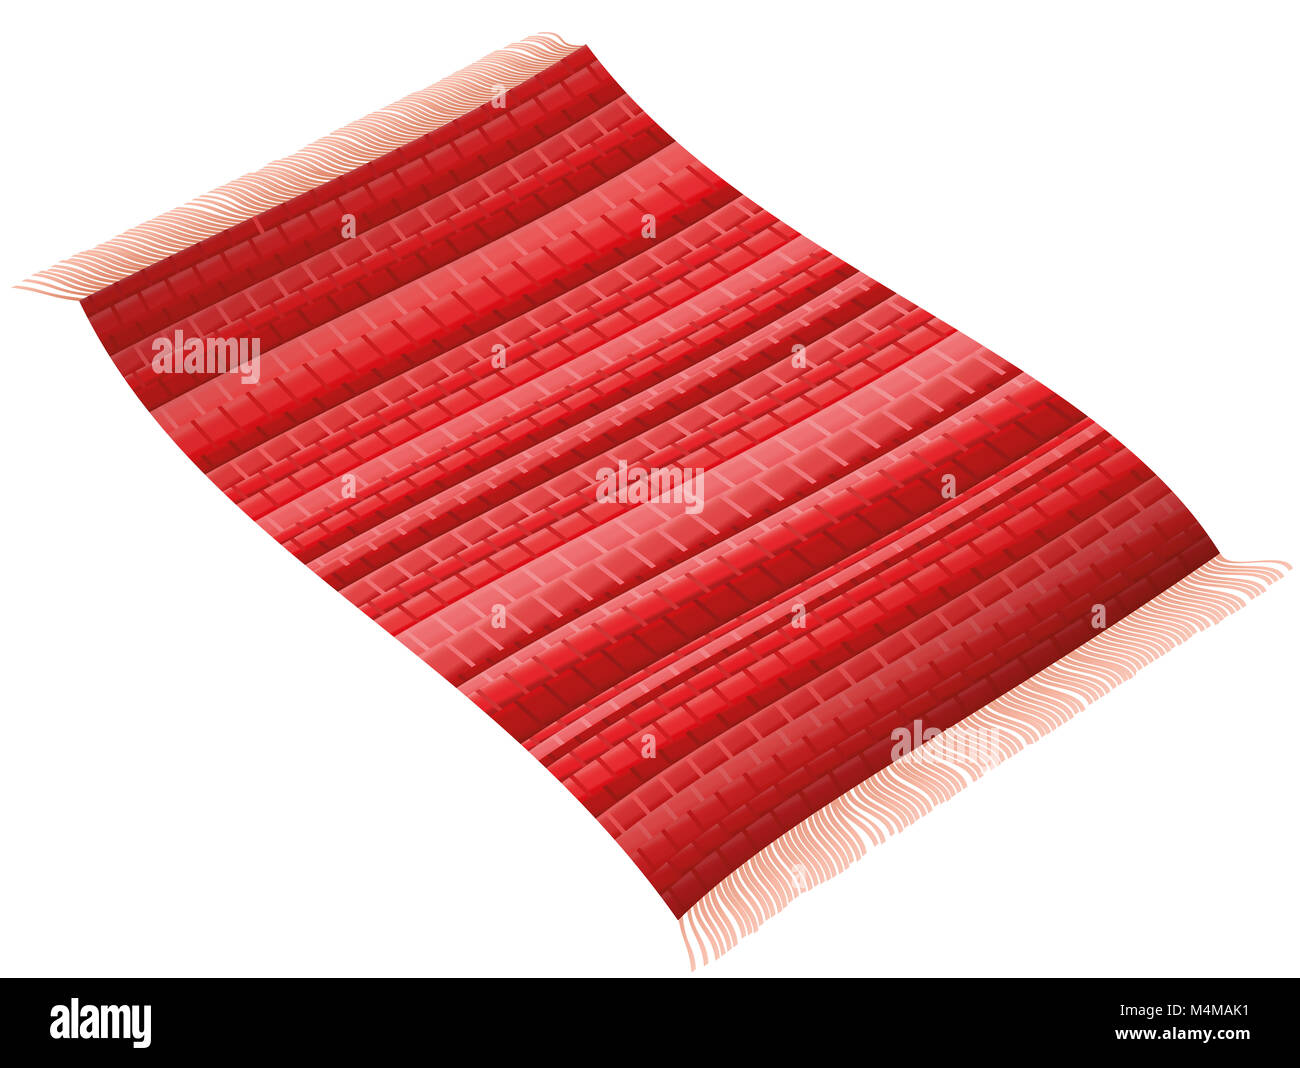 Tappeto rosso. Flying rag rug come un tappeto magico. Immagine su sfondo bianco. Foto Stock